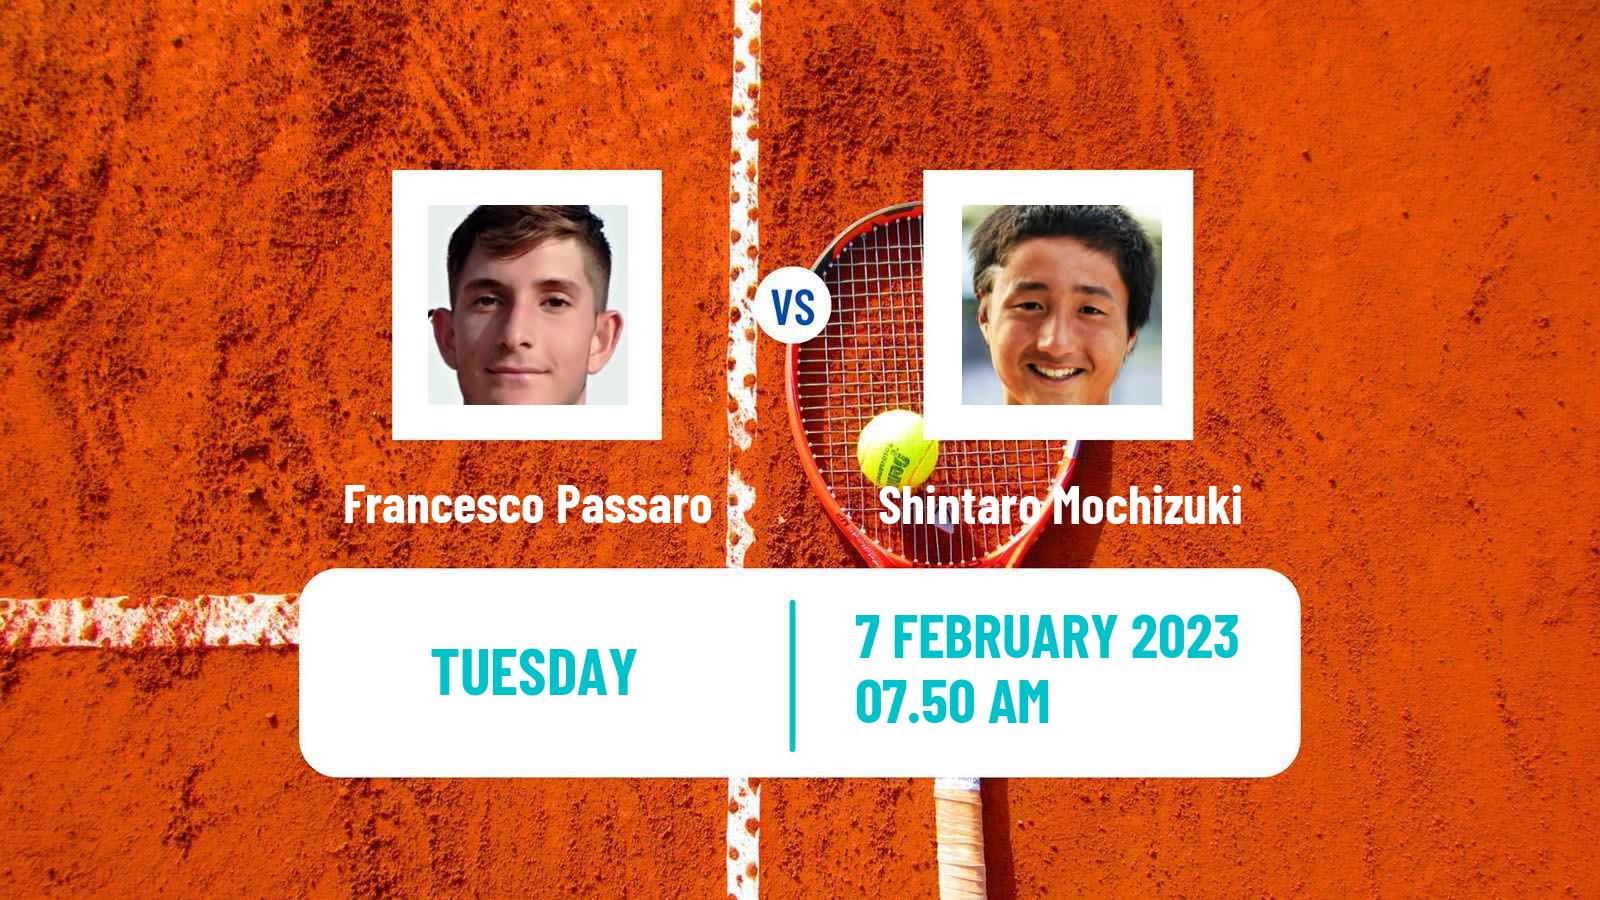 Tennis ATP Challenger Francesco Passaro - Shintaro Mochizuki